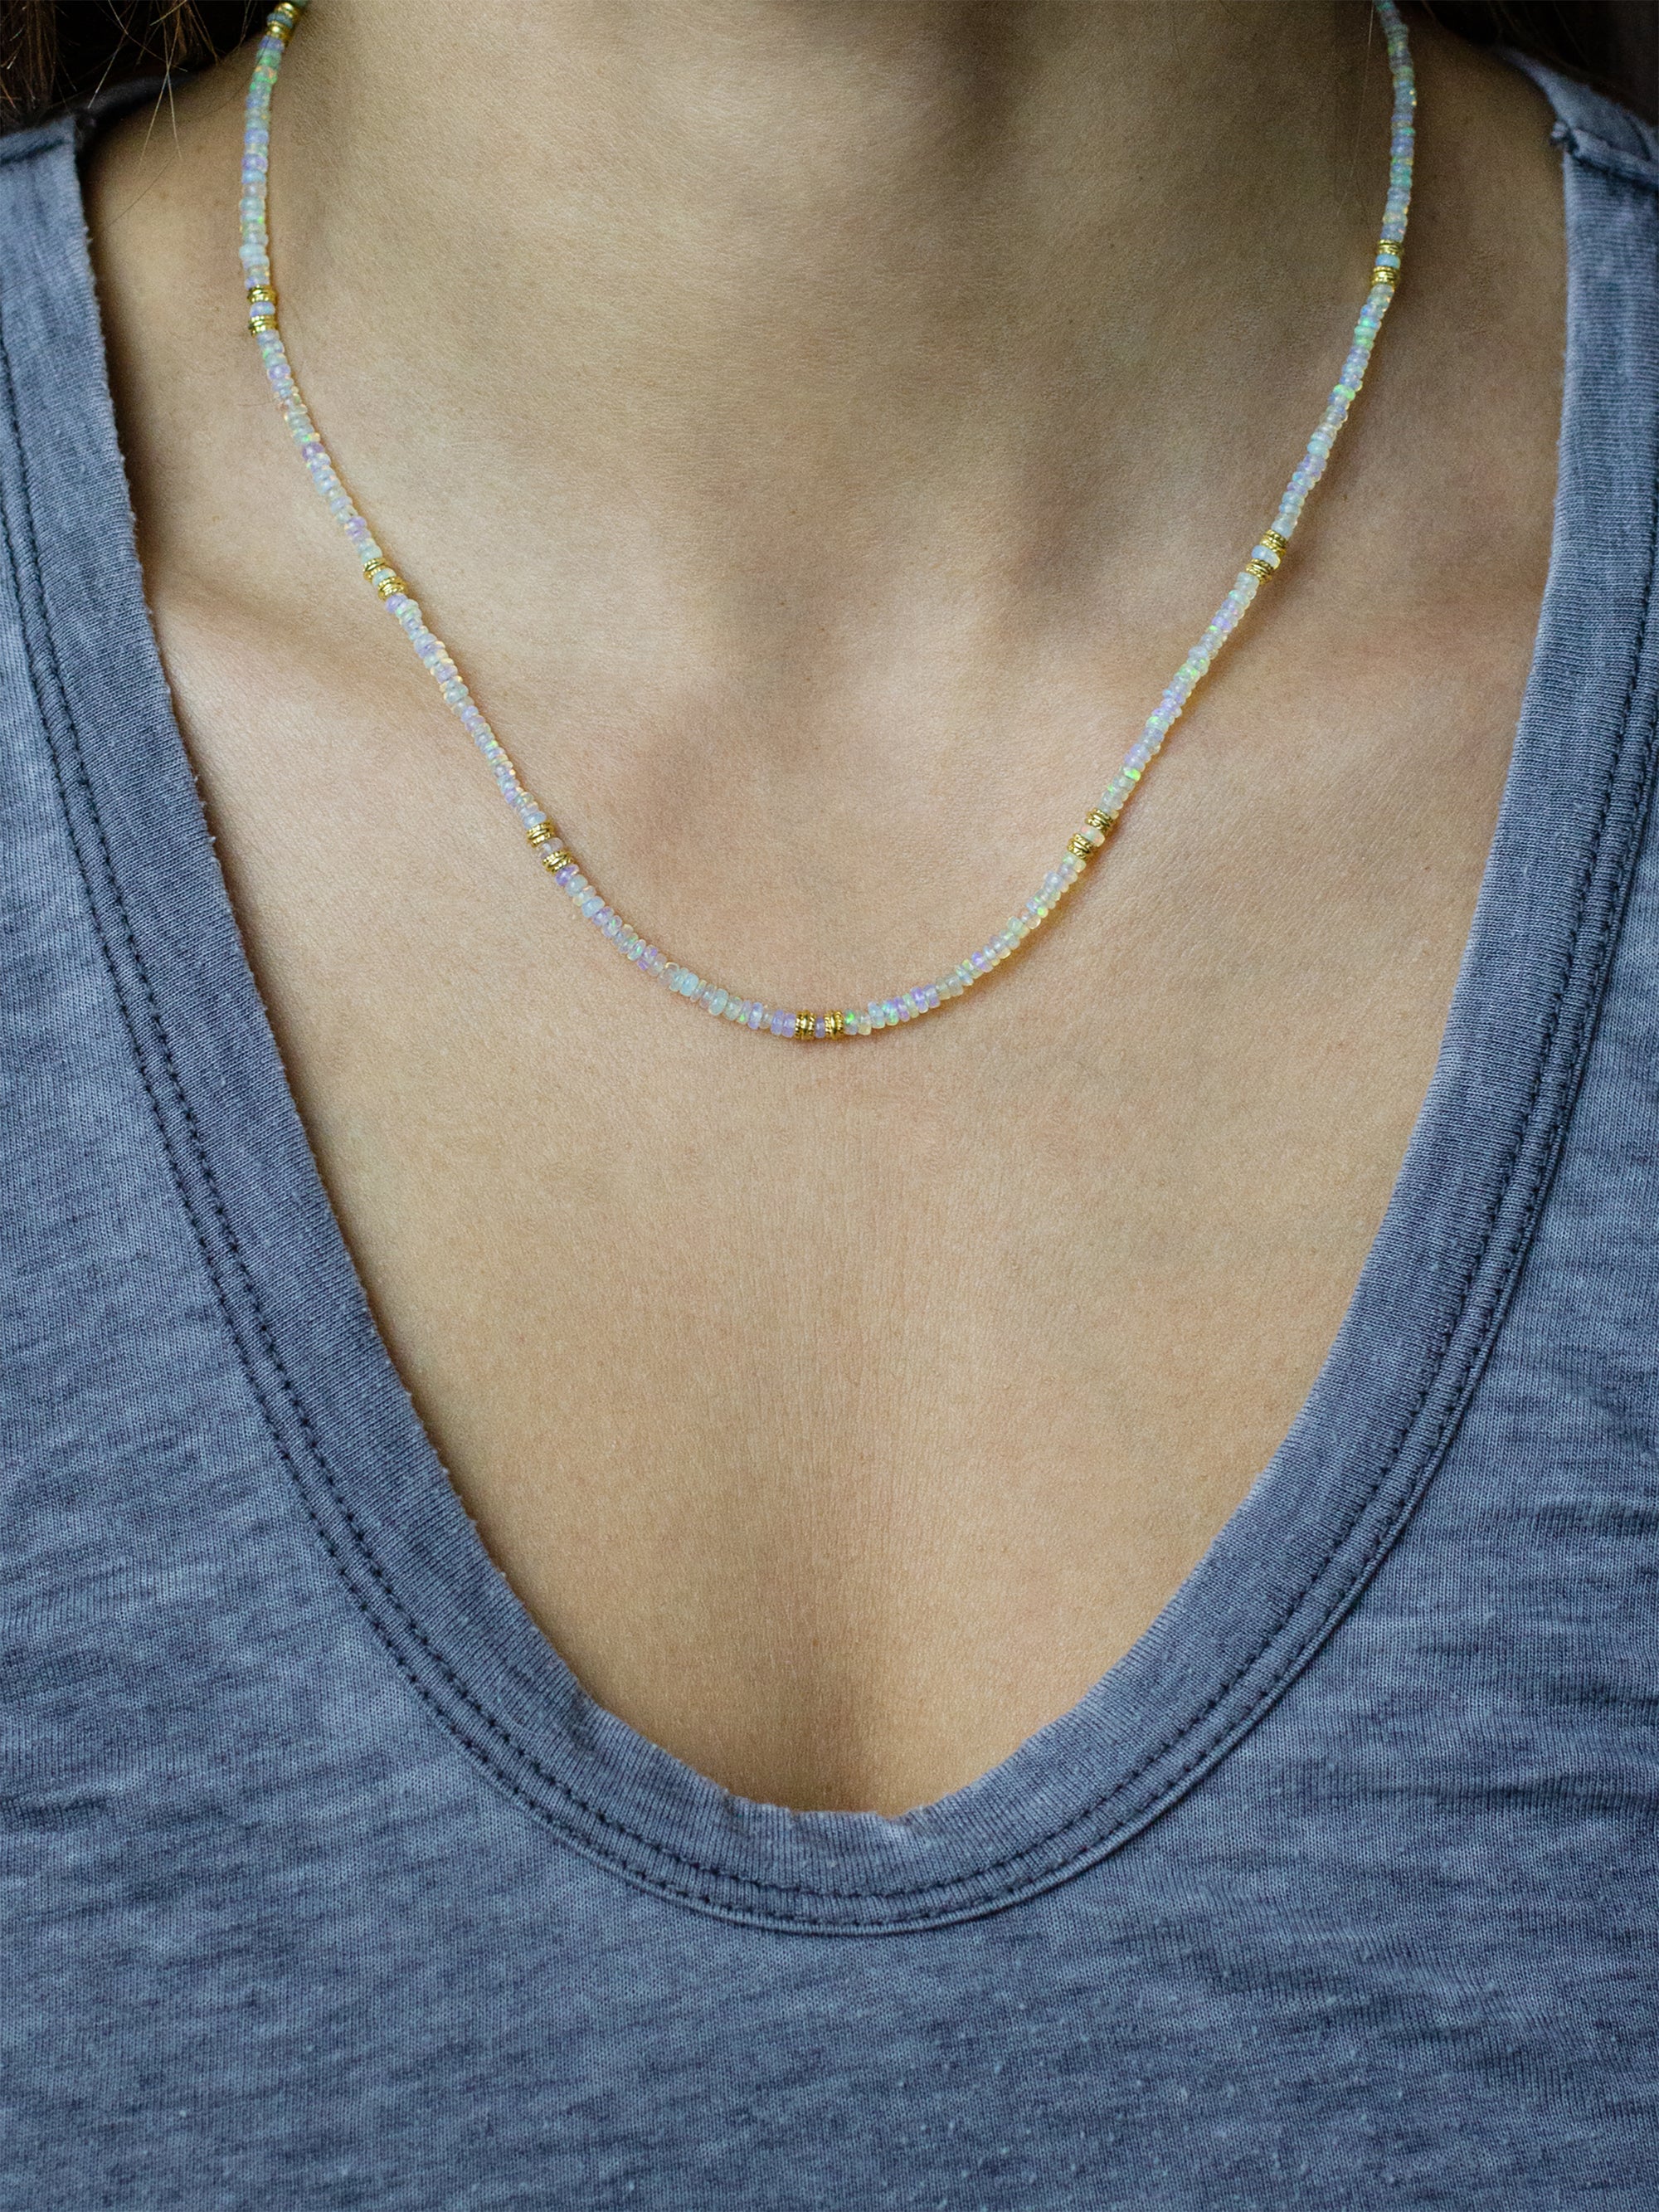 Coast Necklace - Opal